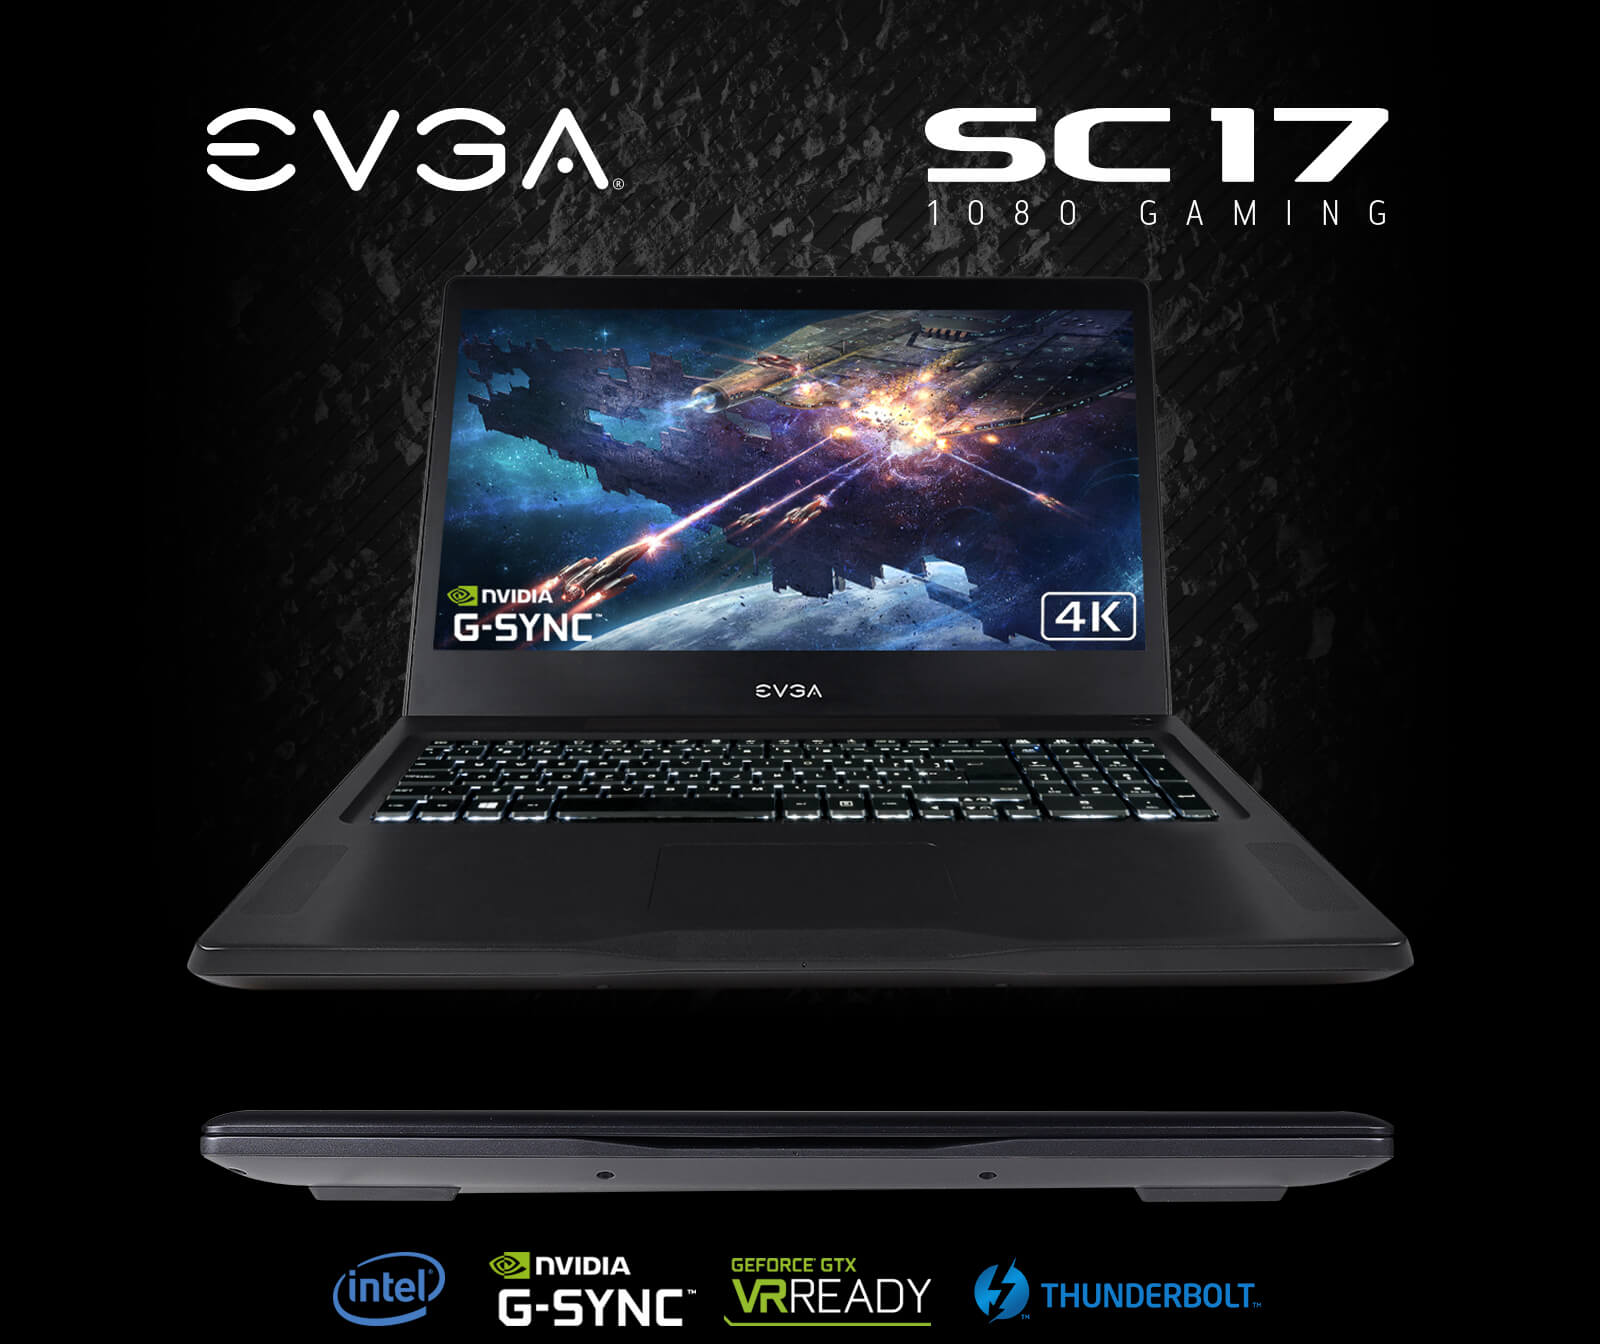 EVGA SC17 1080 G-SYNC Gaming Laptop